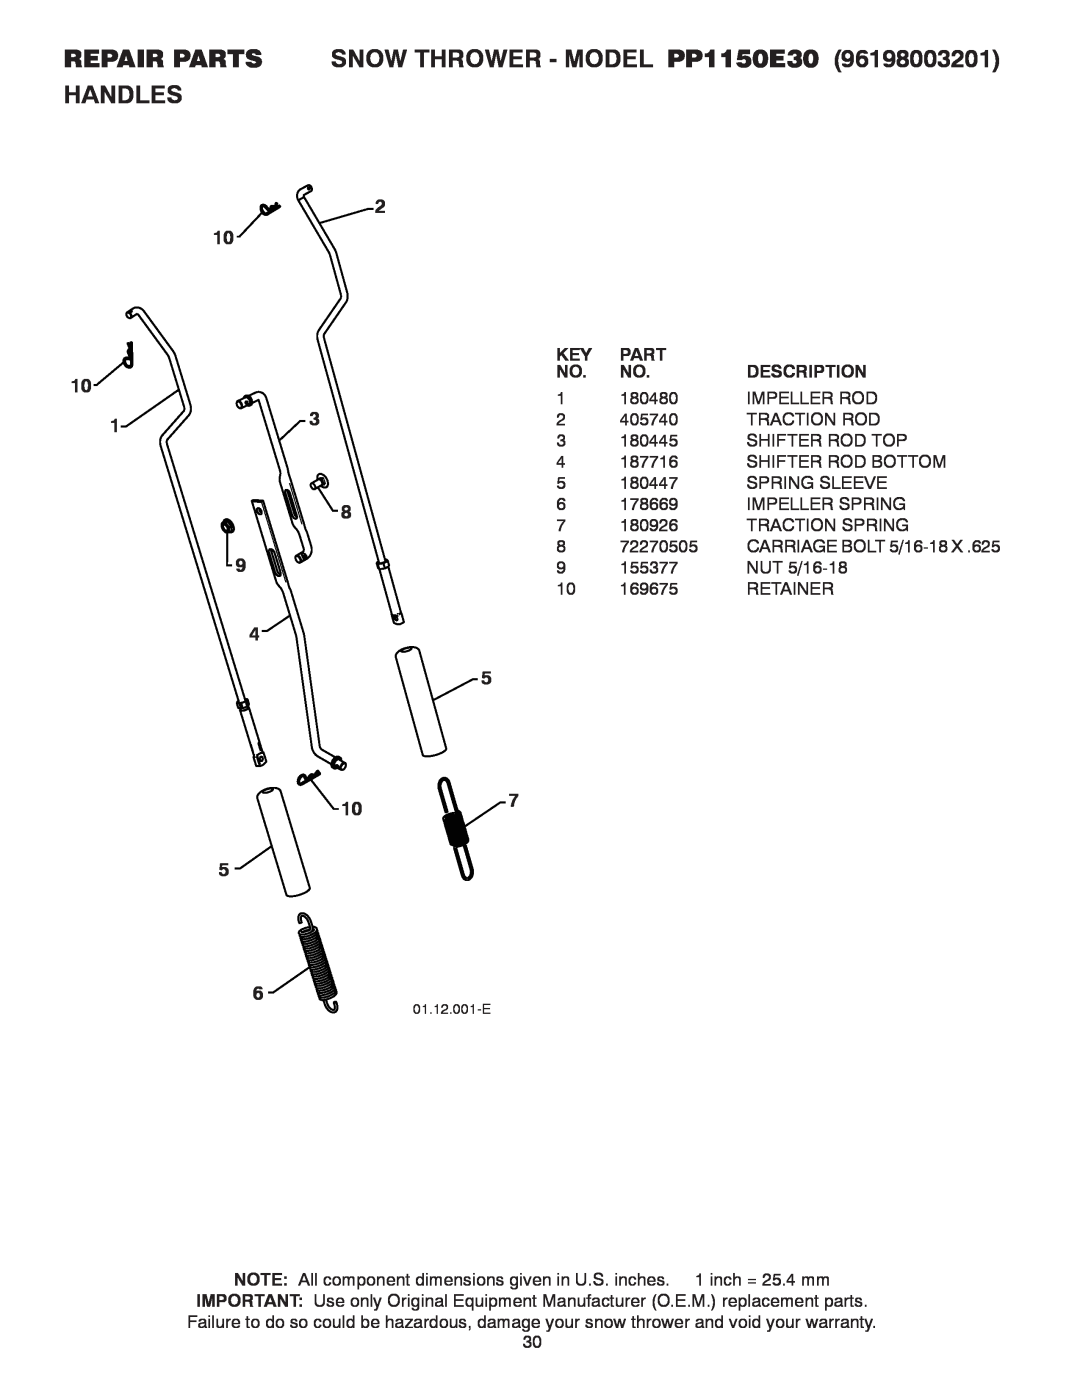 Poulan owner manual REPAIR PARTS SNOW THROWER - MODEL PP1150E30, Handles, Part, Description, 180480, Impeller Rod 